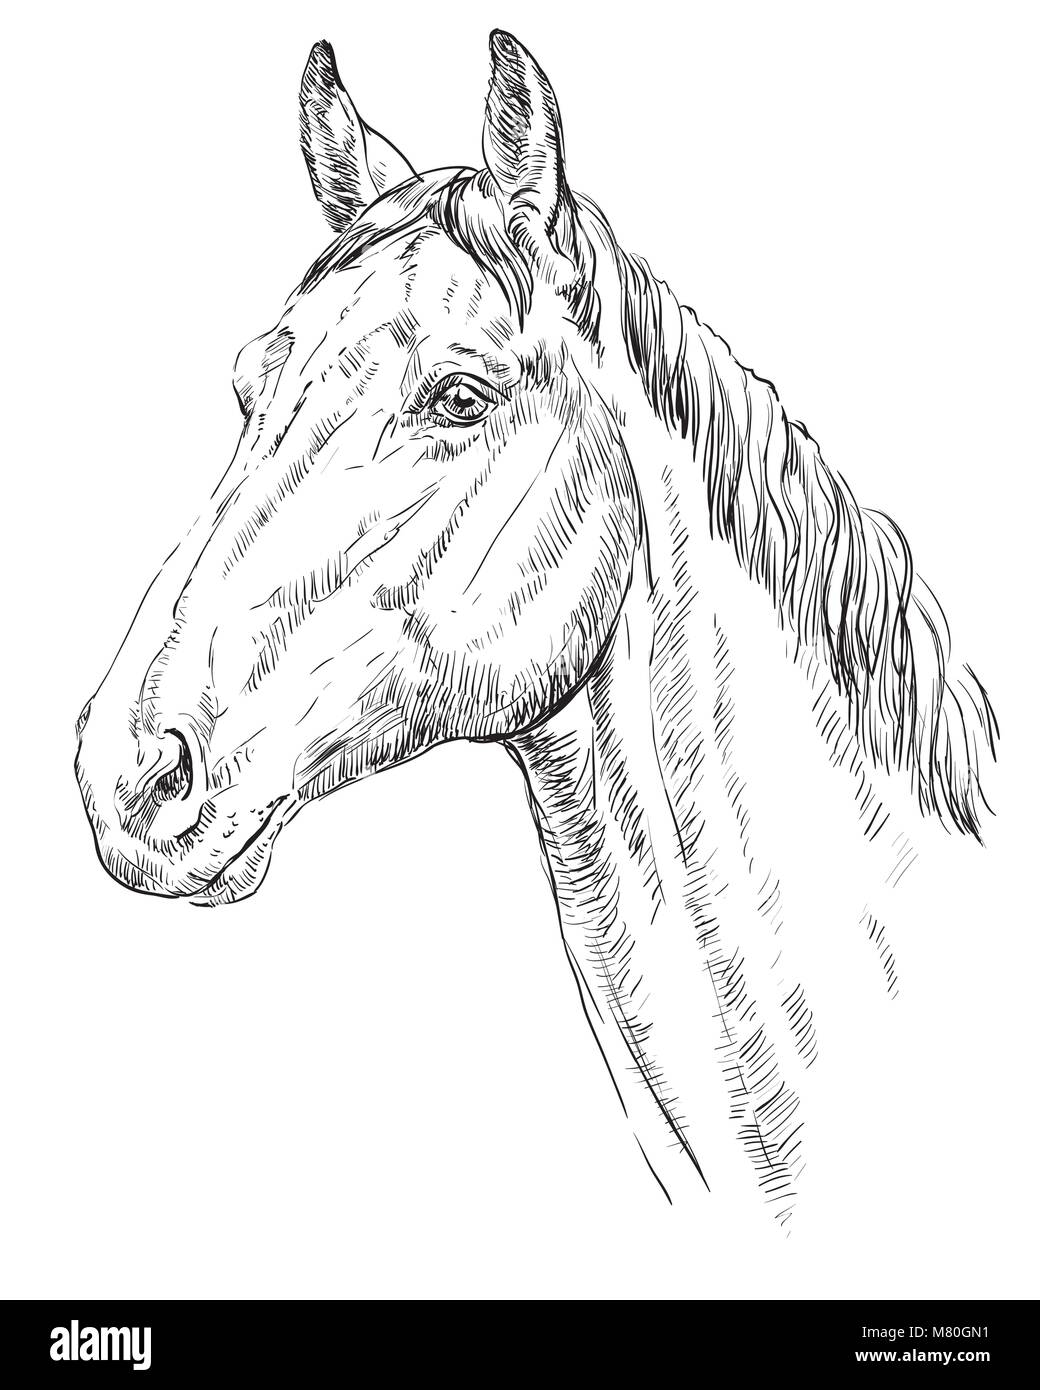 Trakehner Porträt. Pferdekopf im Profil in Schwarzweiß Farbe auf weißem Hintergrund. Vektor hand Zeichnung Abbildung Stock Vektor